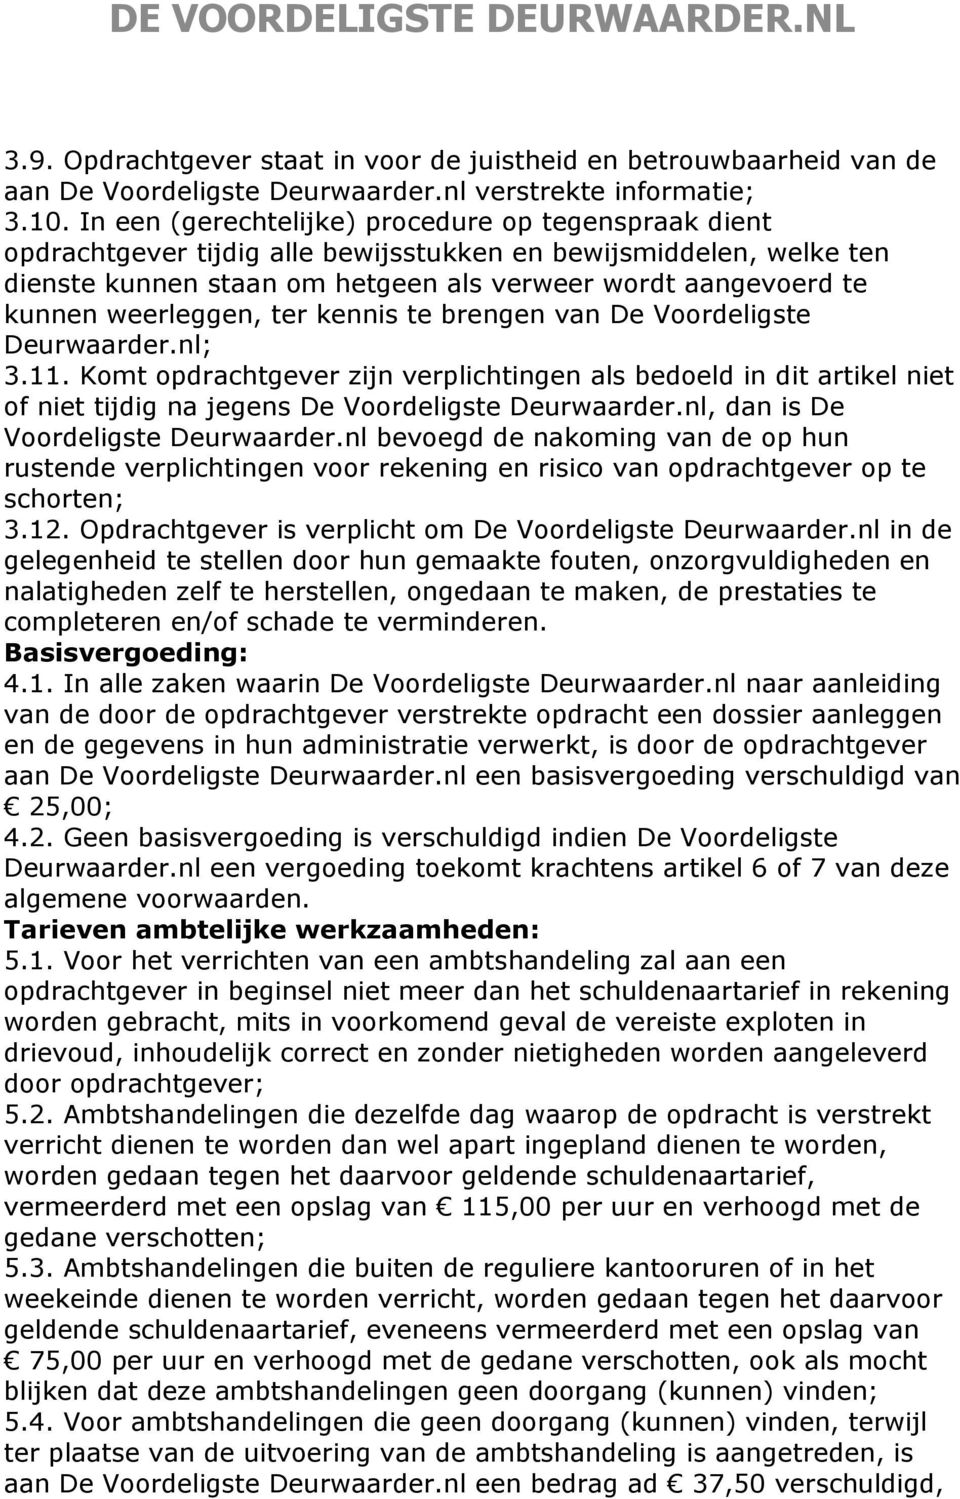 weerleggen, ter kennis te brengen van De Voordeligste Deurwaarder.nl; 3.11. Komt opdrachtgever zijn verplichtingen als bedoeld in dit artikel niet of niet tijdig na jegens De Voordeligste Deurwaarder.